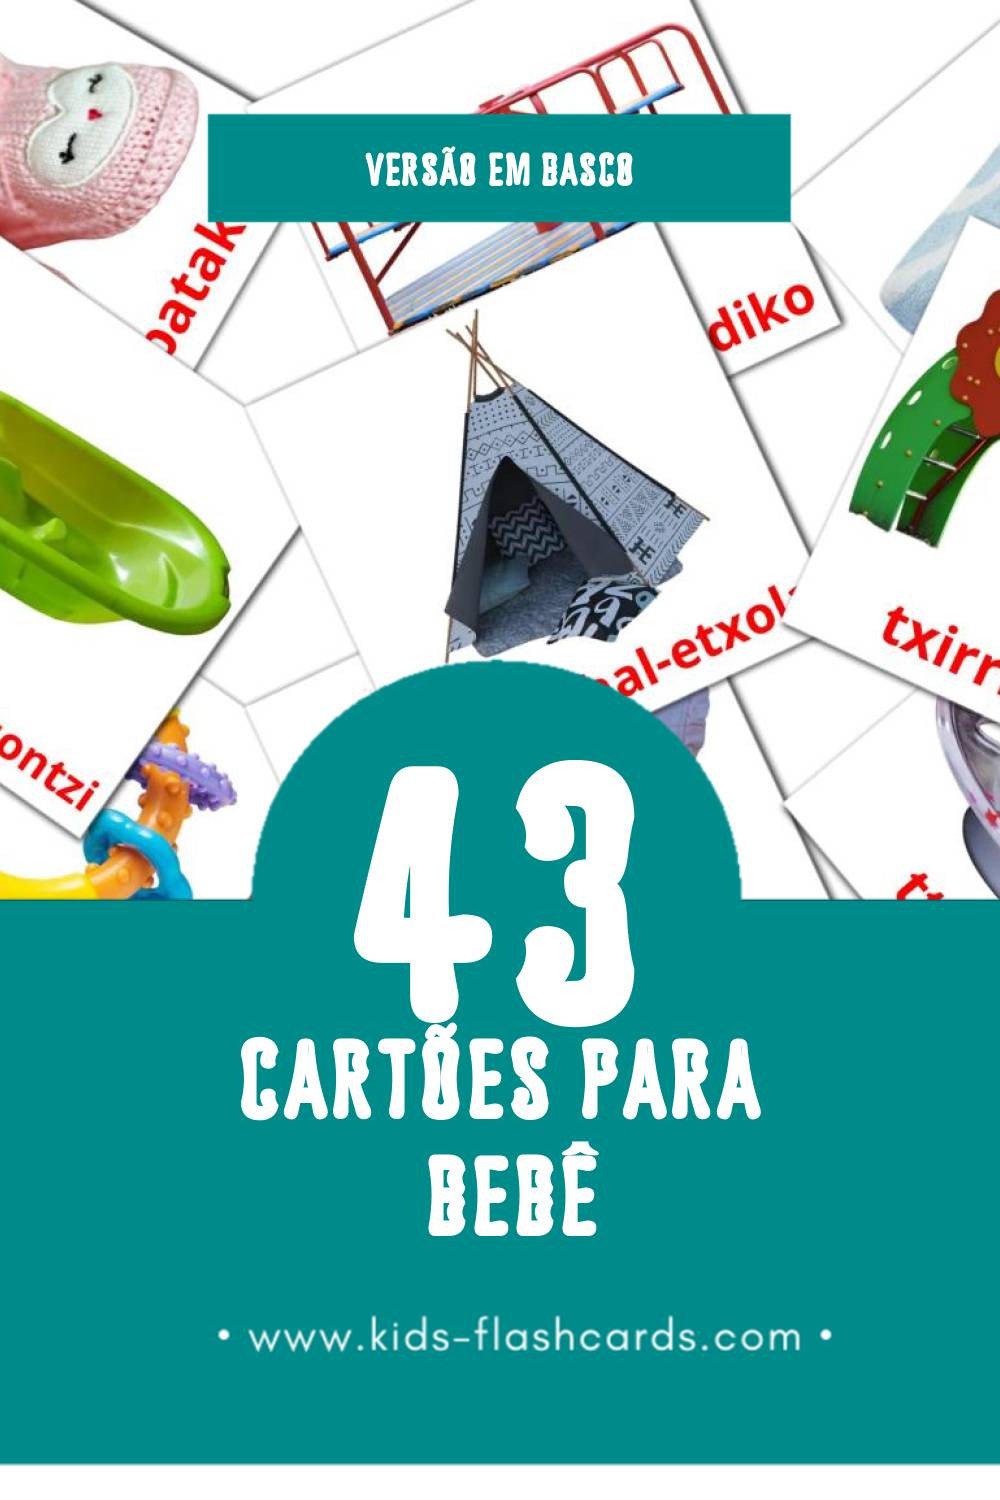 Flashcards de Haurtxo / Umetxo Visuais para Toddlers (43 cartões em Basco)